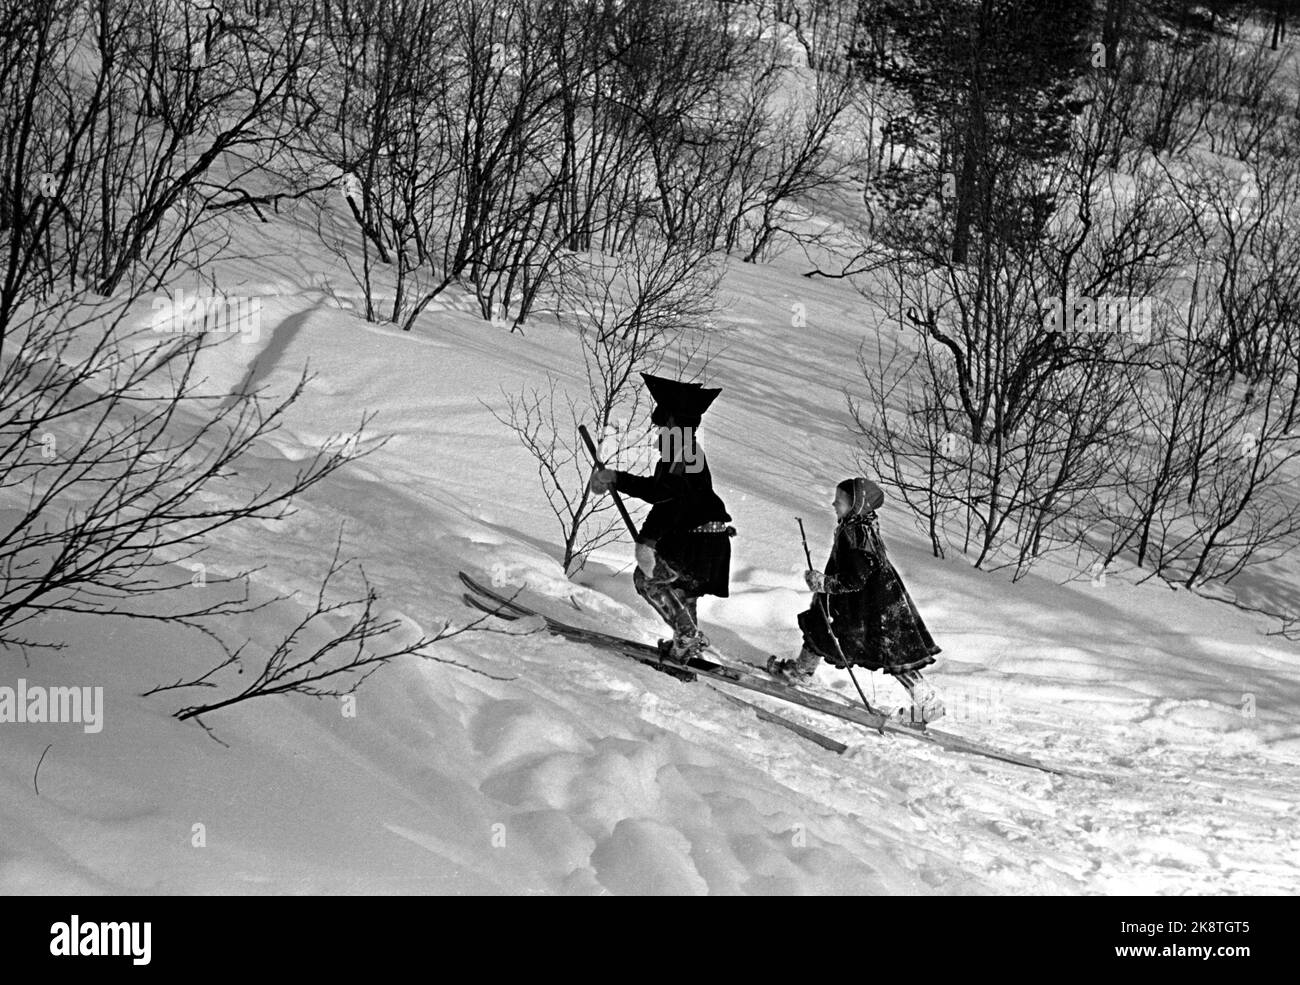 Karasjok, Finnmark, janvier 1950. De l'école d'embarquement pour les enfants en déplacement. Les enfants sâmes vivent à l'école d'embarquement. Les enfants sâmes ont la meilleure chose quand ils peuvent se déplier dans les produits gratuits. Ici, les enfants jouent dans la neige comme ils sont habitués à de la prairie. Deux tout-petits skier. Photo: SV. A. Børretzen / courant / NTB Banque D'Images